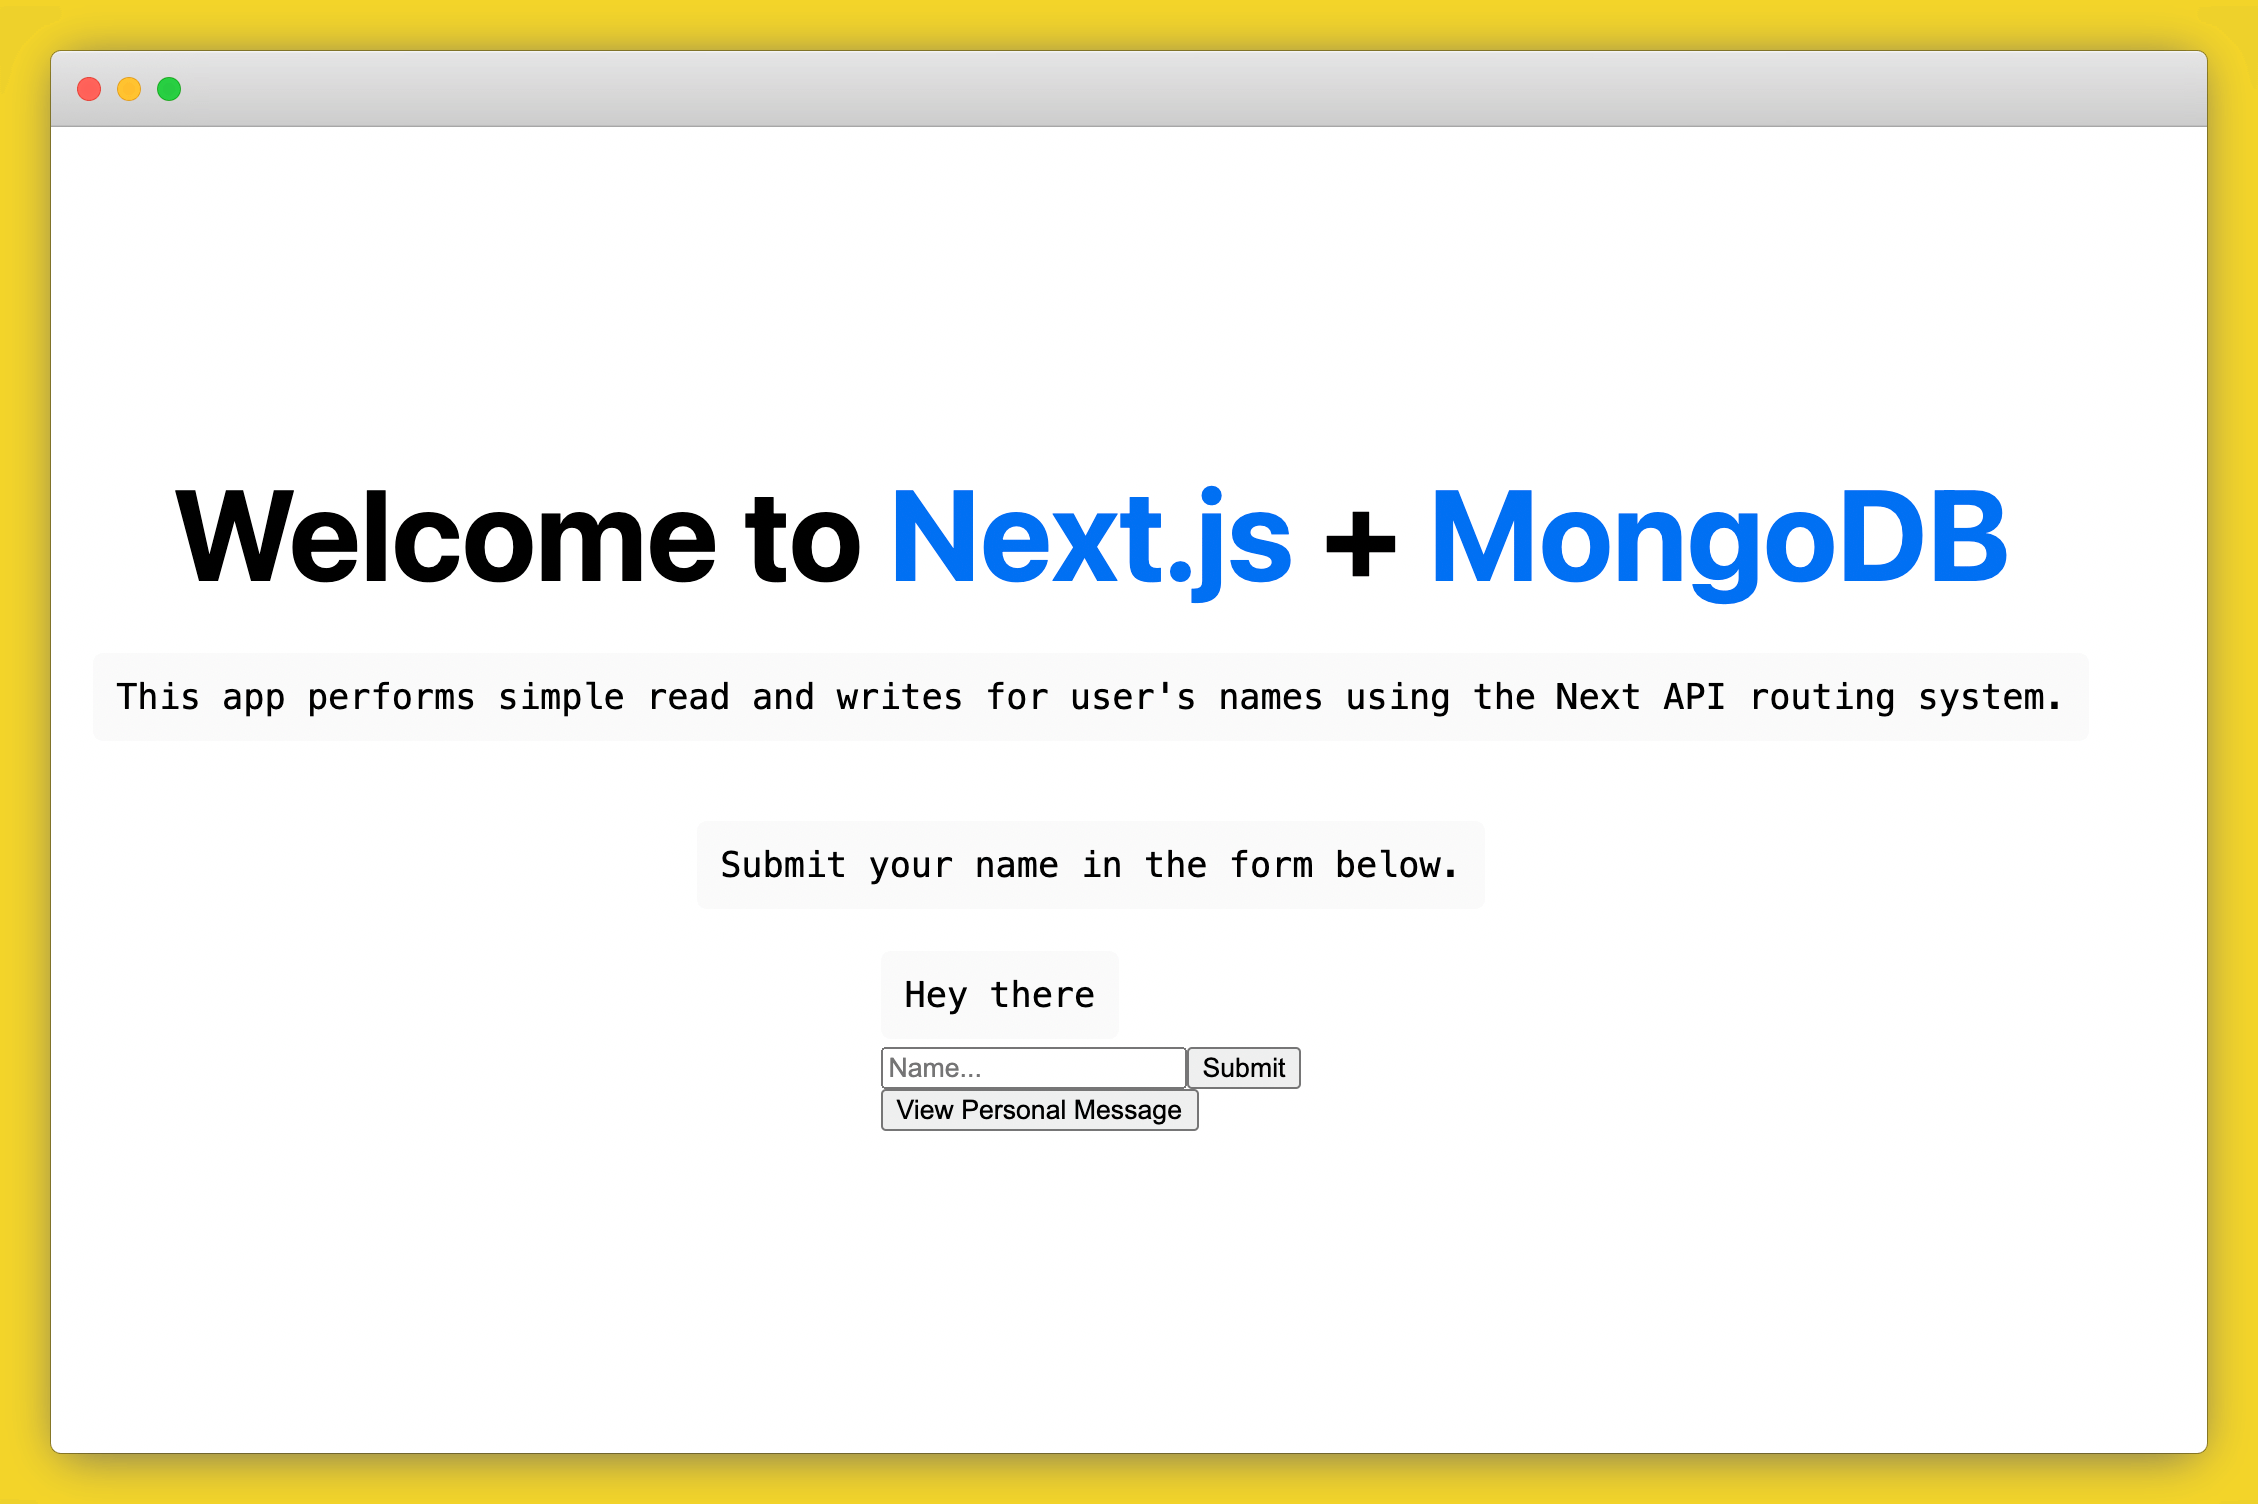 cc next mongo app